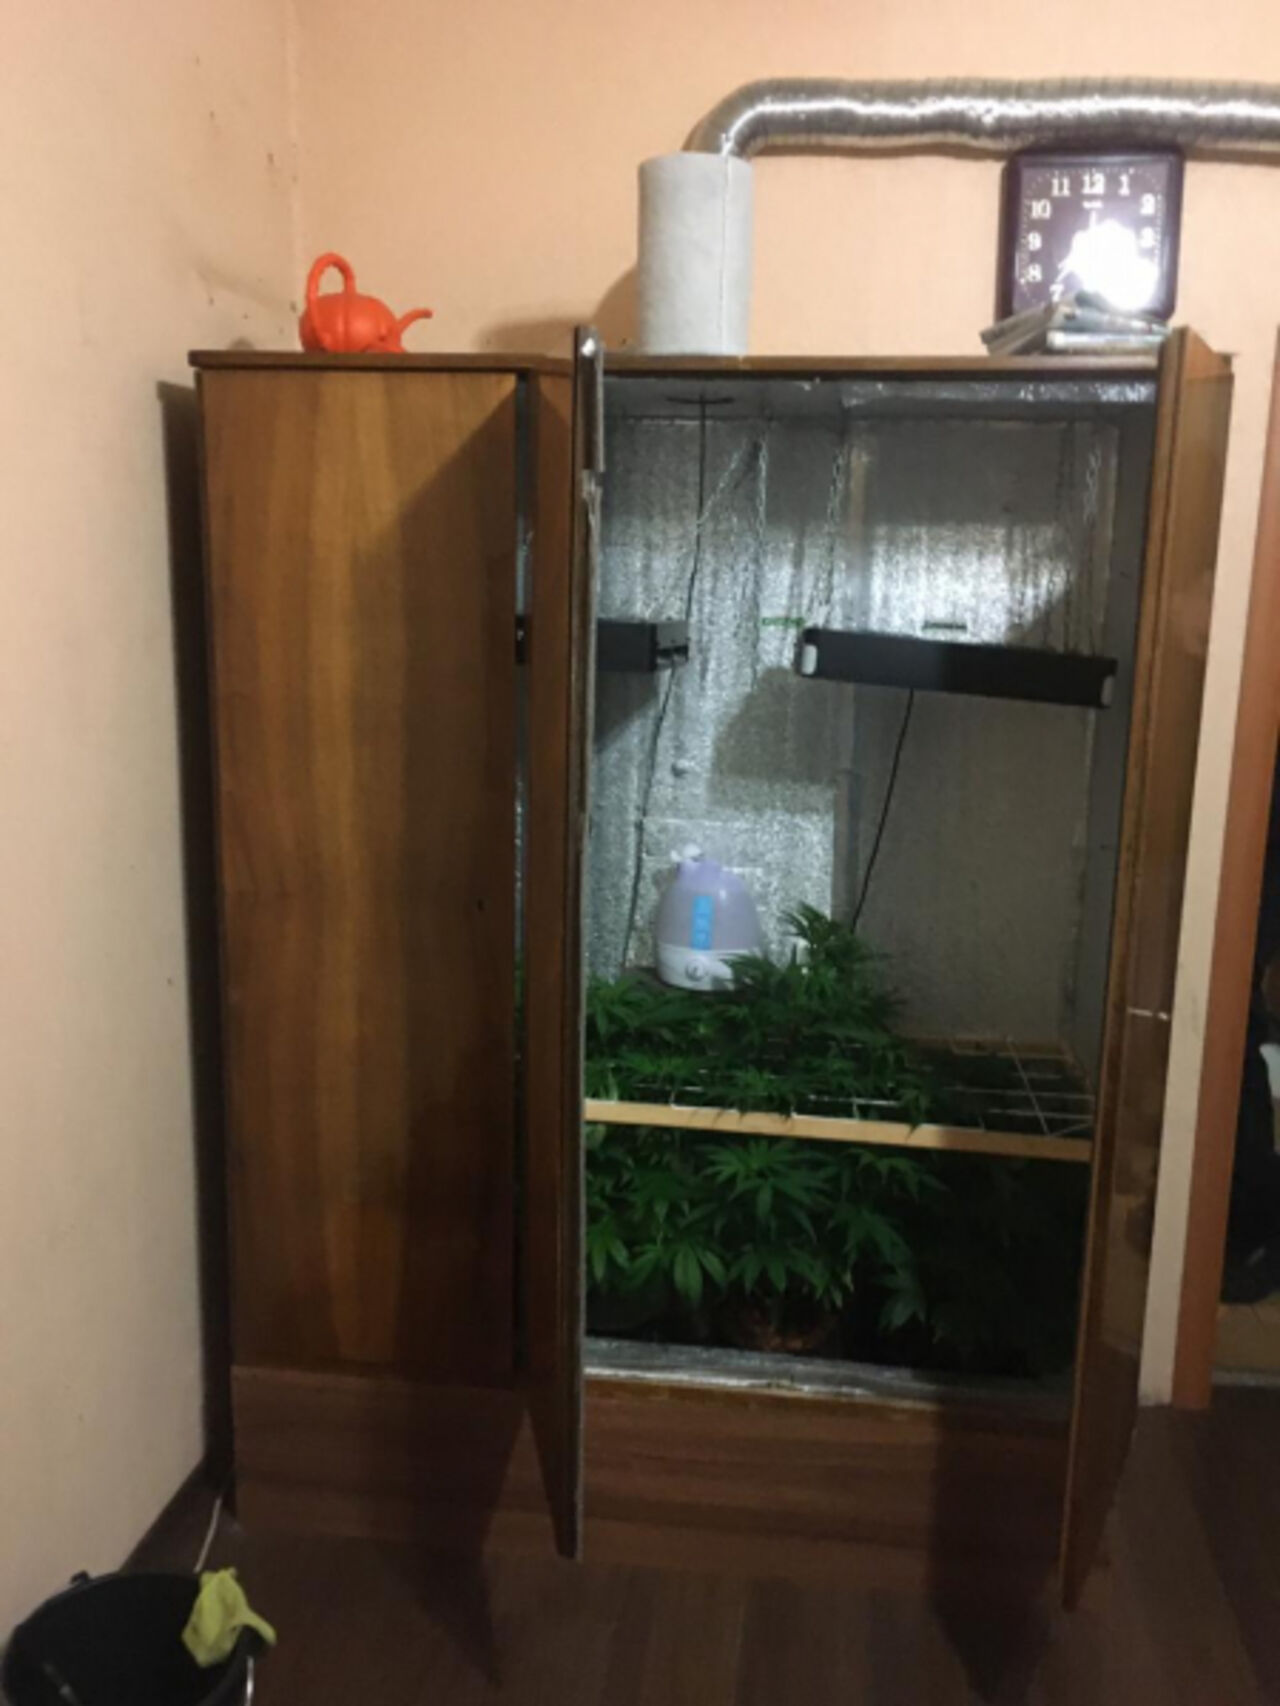 Марихуаны в шкафу ускоренного выведения марихуаны